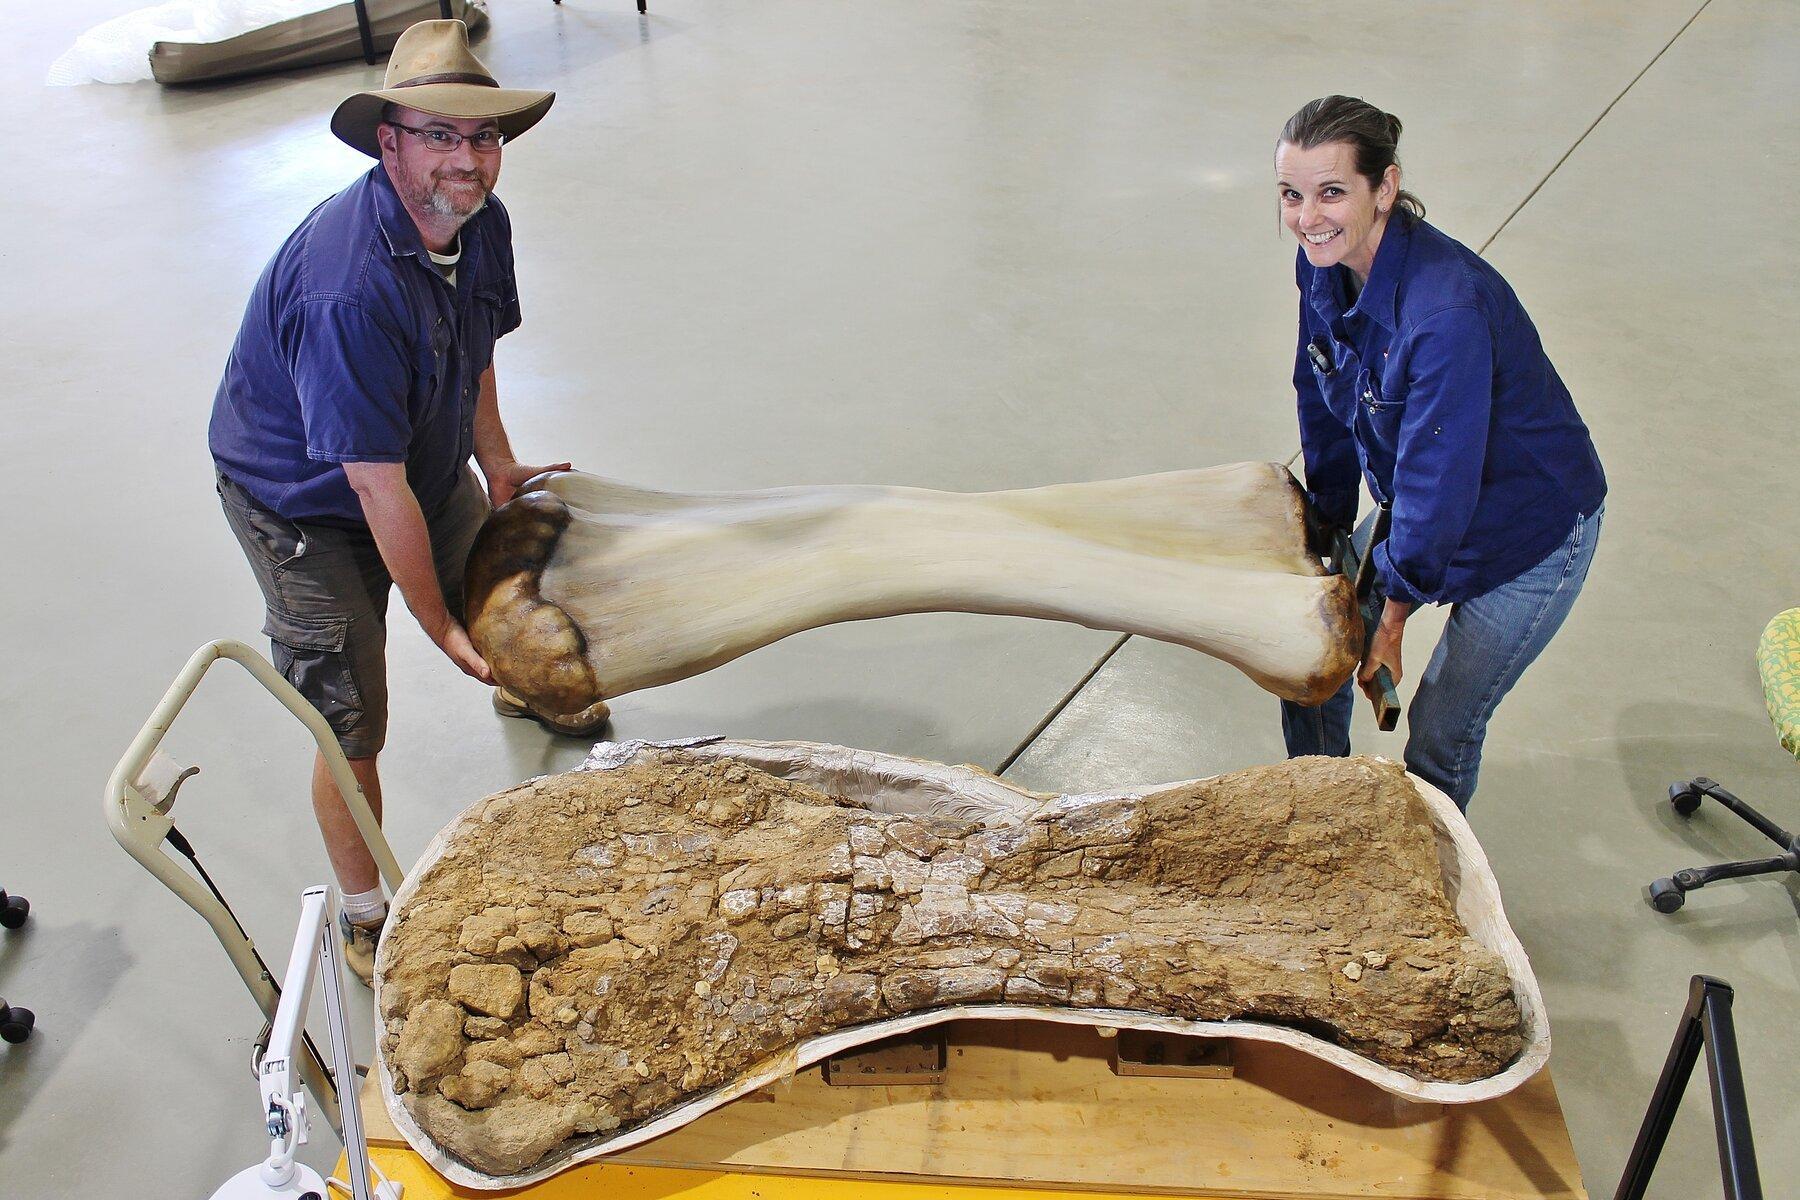 В Австралии открыли новый вид гигантского титанозавра